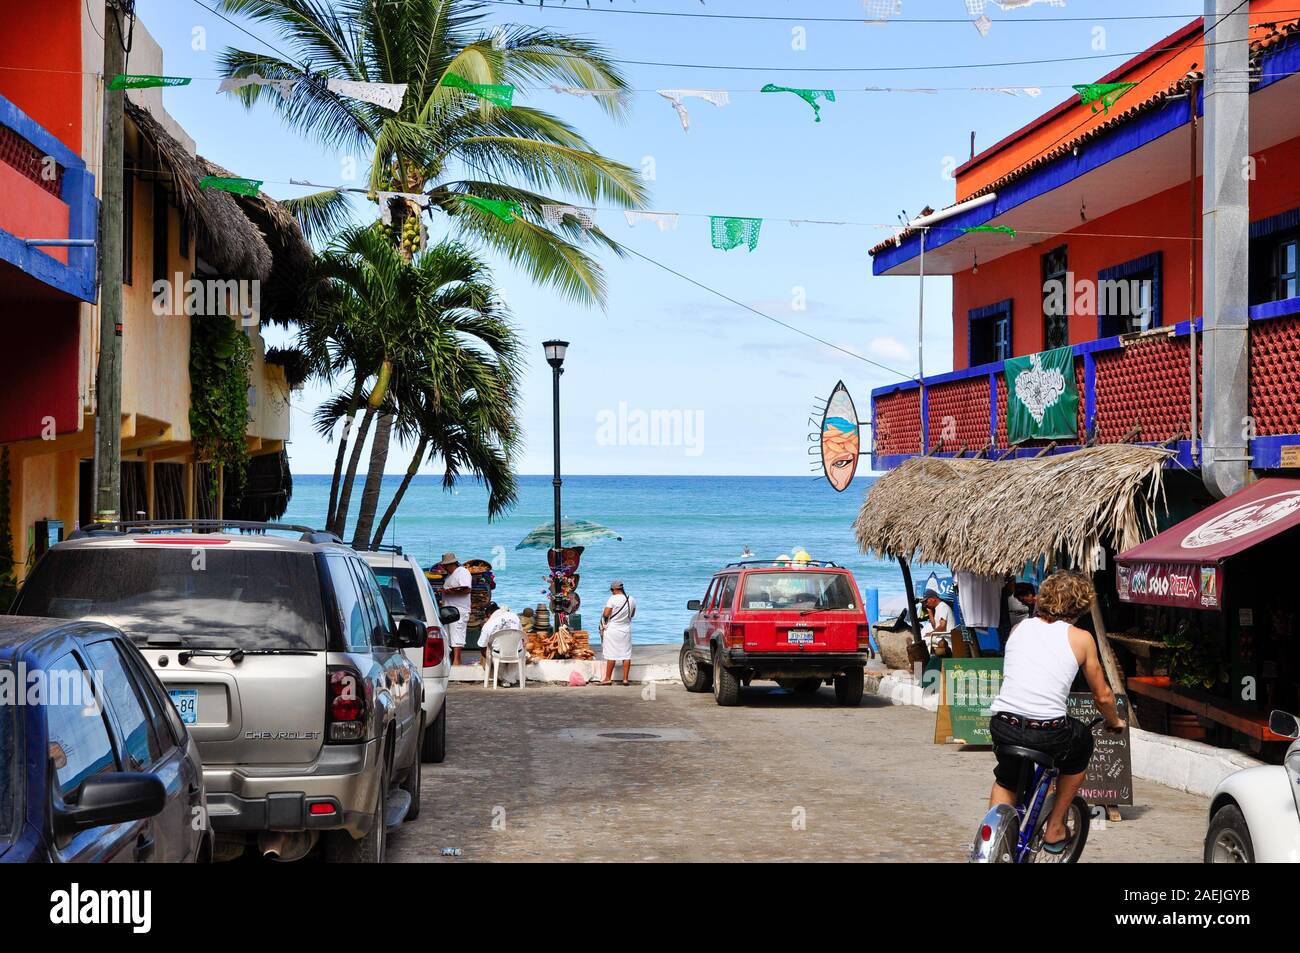 Straßenszene in Sayulita, Nayarit, Mexiko. Sayulita ist ein beliebtes Ziel für Surfer, Touristen und Auswanderer. Stockfoto